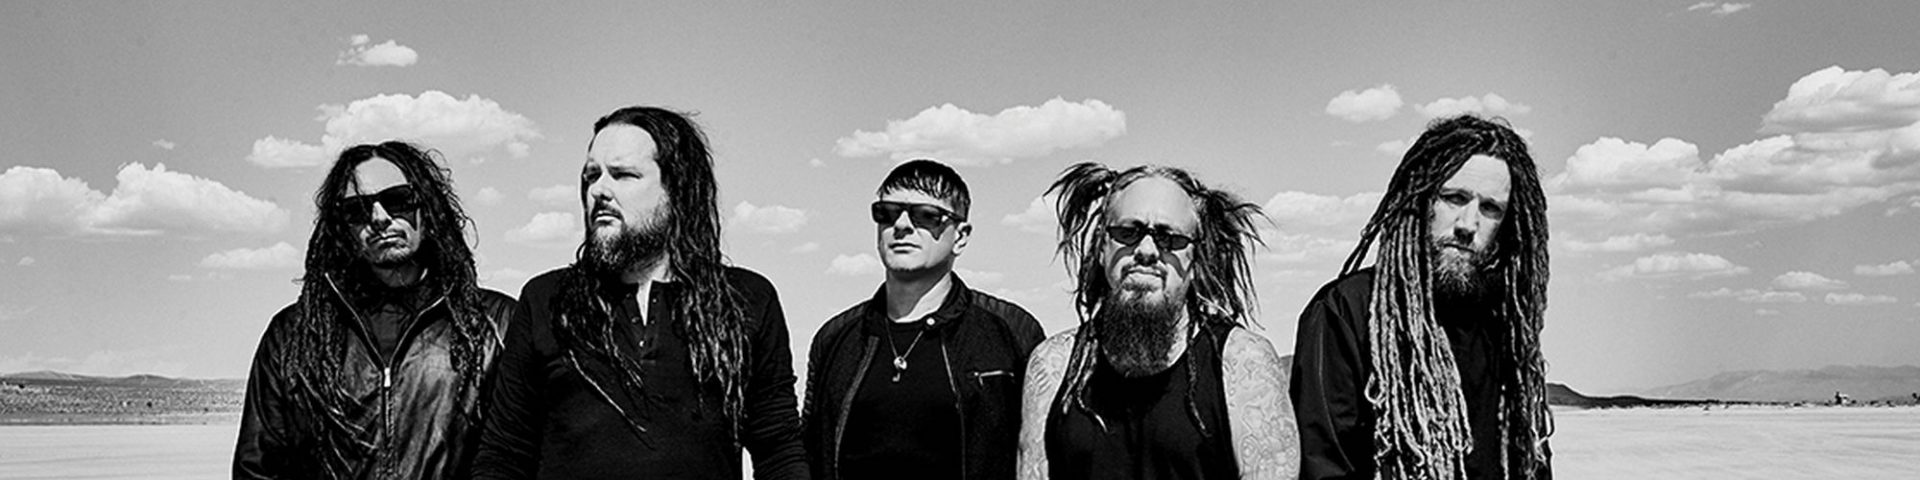 Korn in concerto a Milano giovedì 10 giugno 2021: come acquistare i biglietti su Ticketmaster